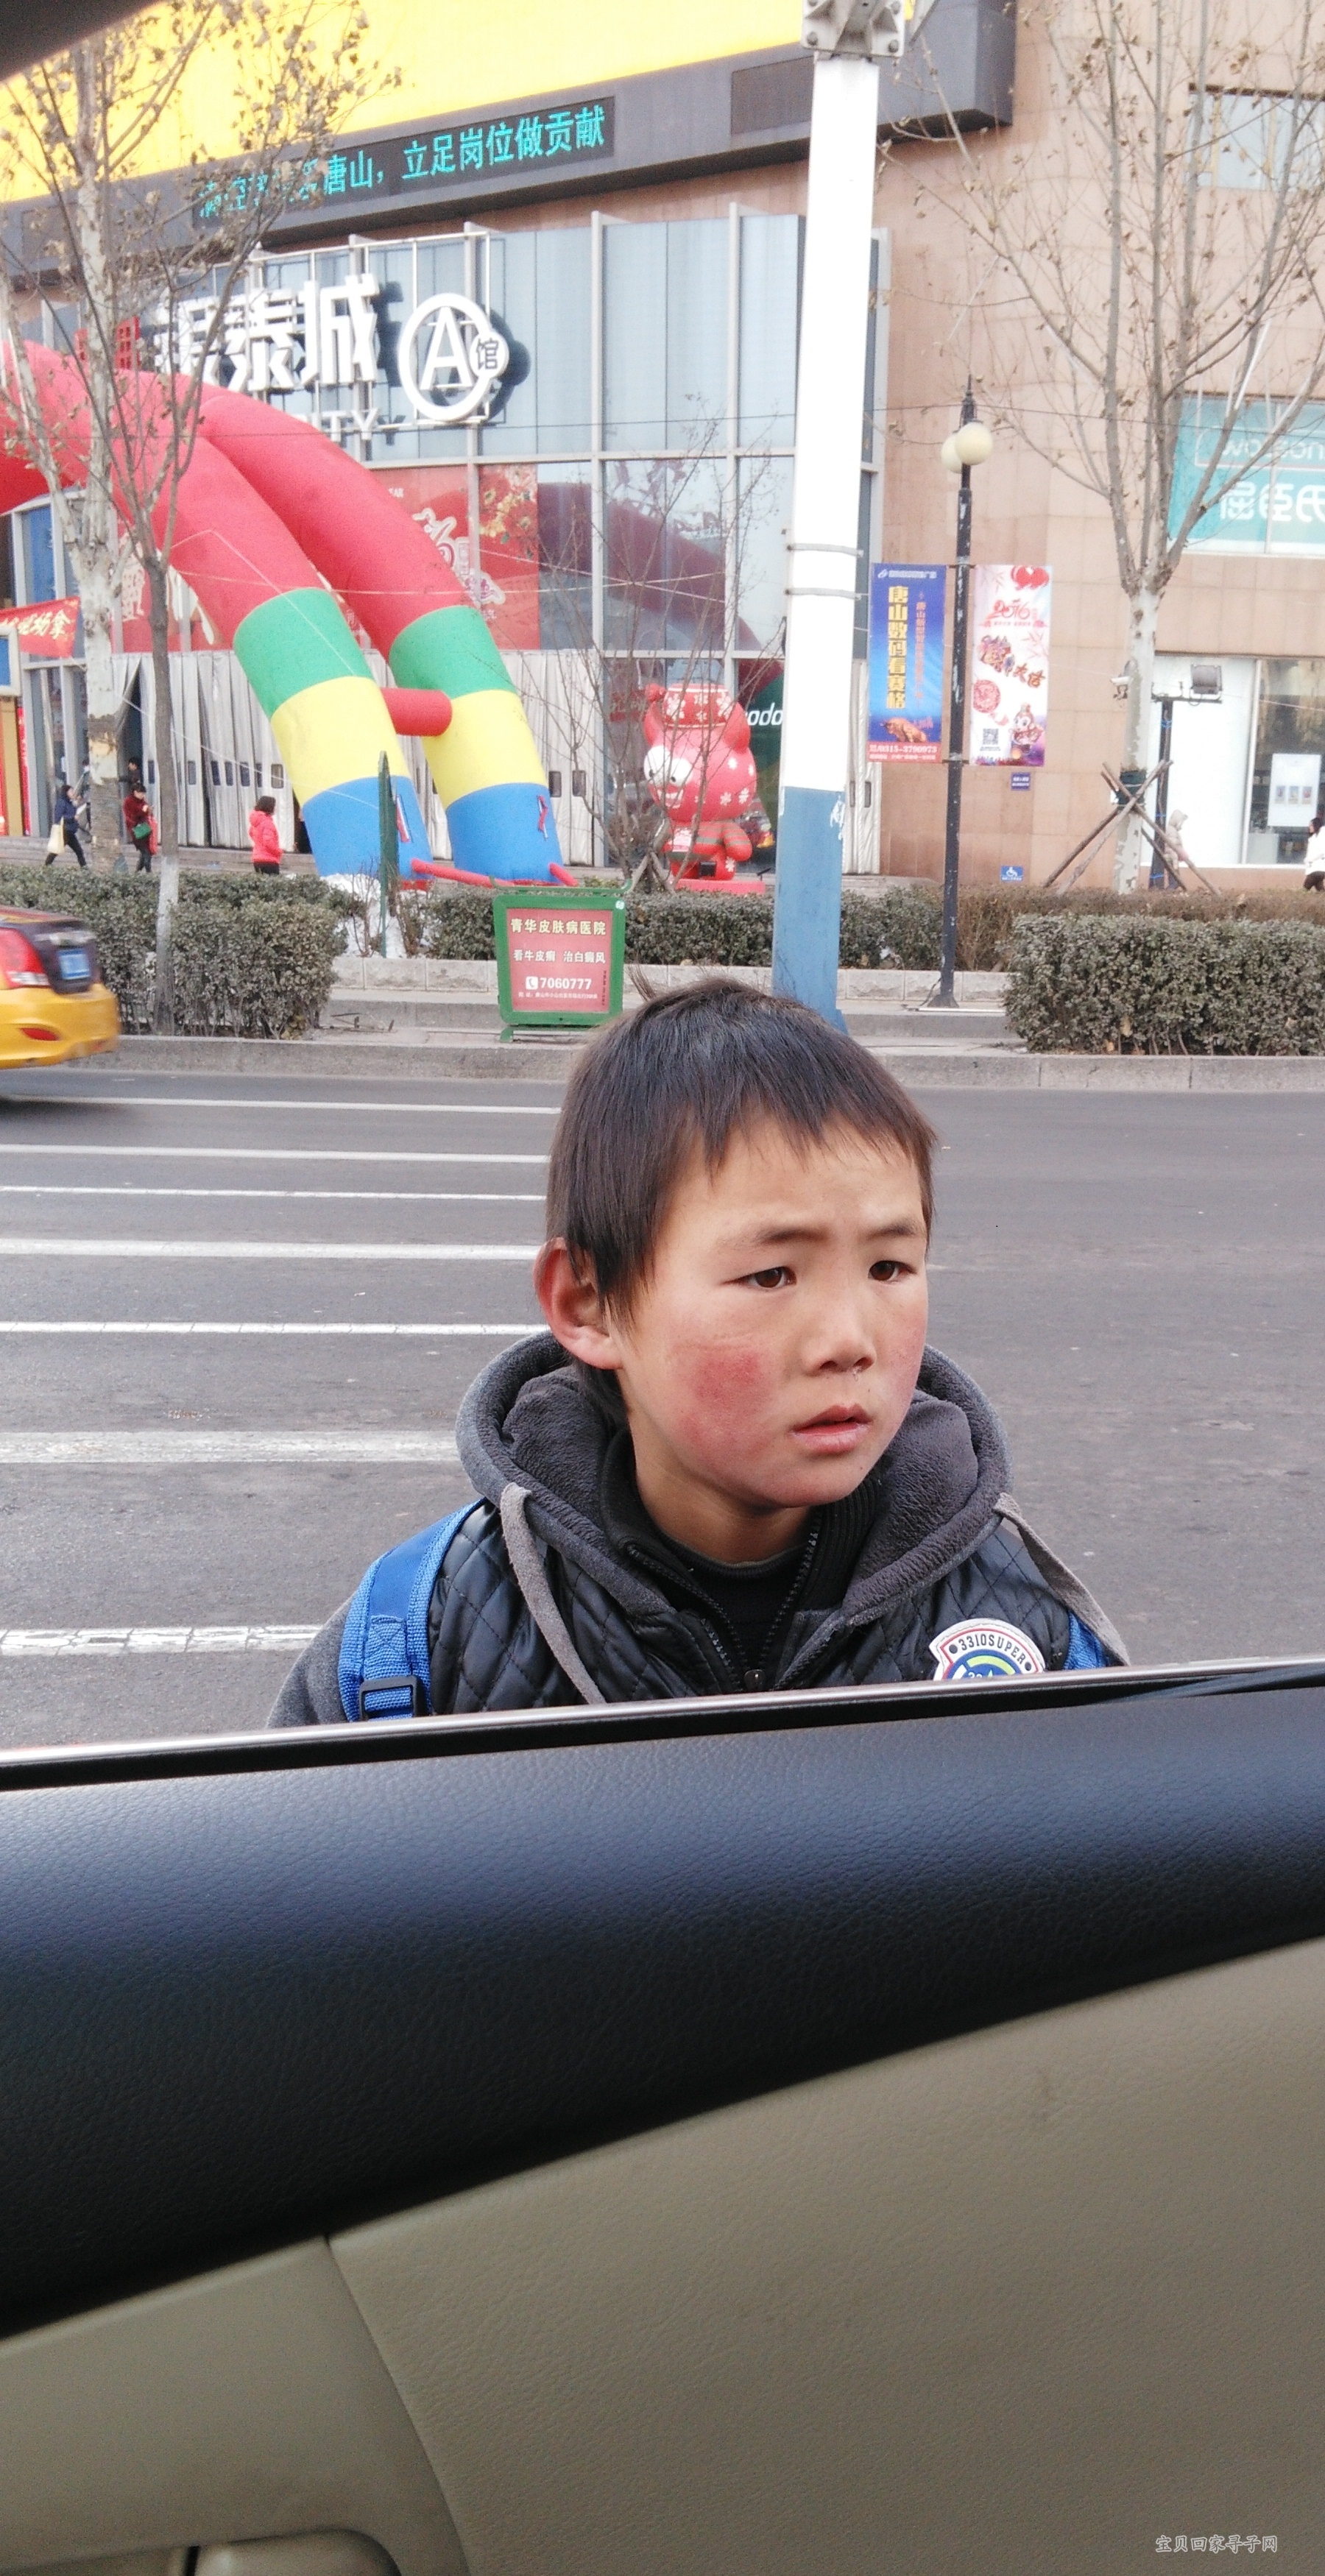 2016年2月3日在河北唐山建设路与新华道见一乞讨男童